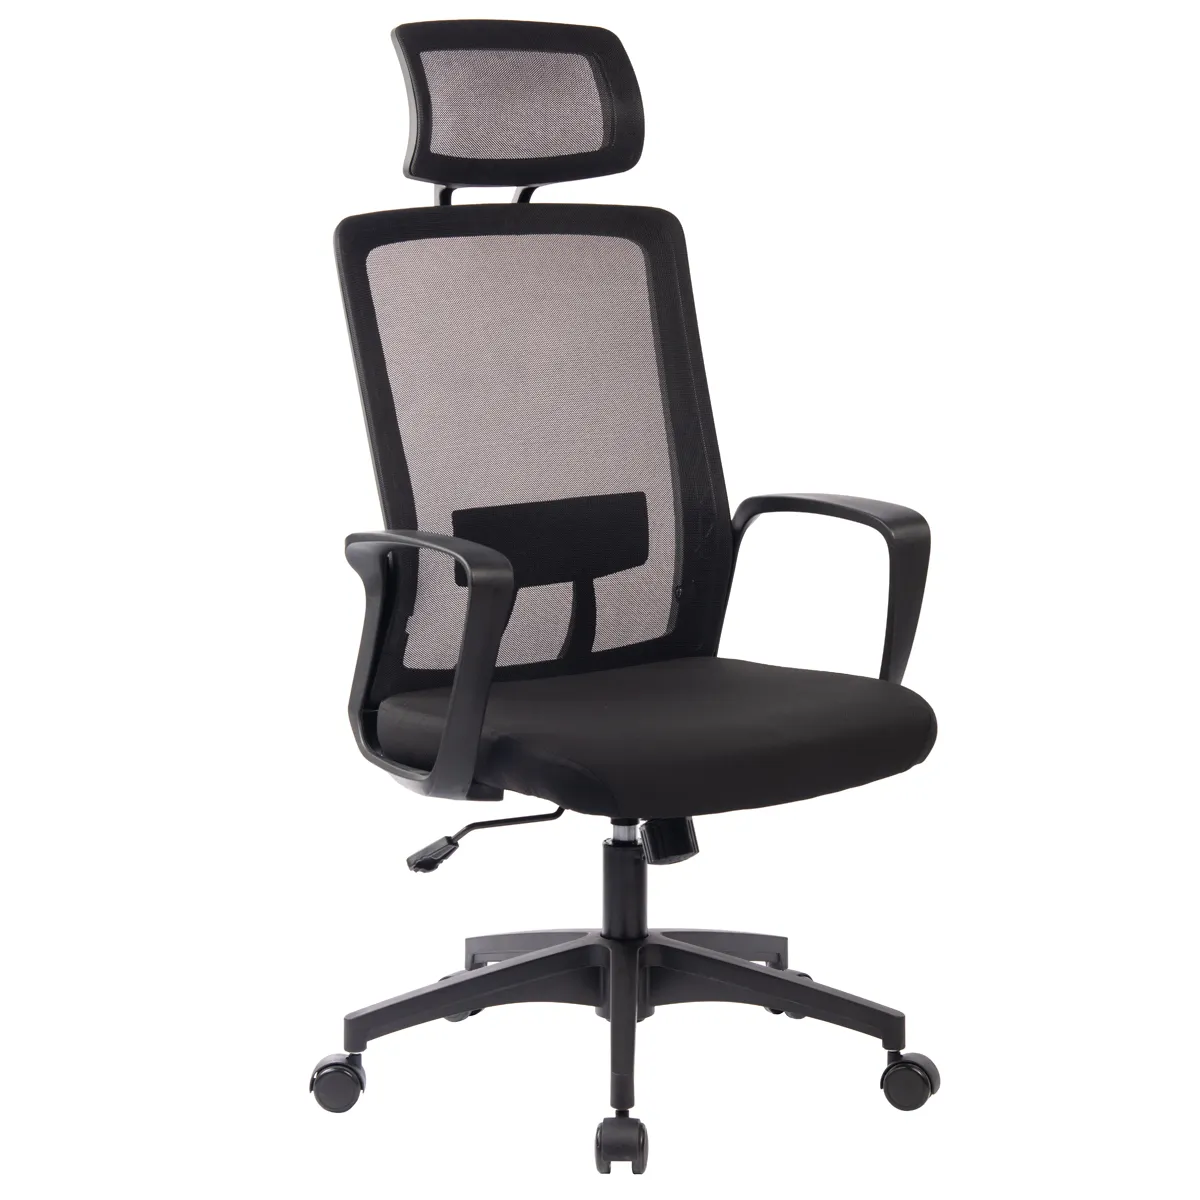 KABEL-High Back Computer Task Chair с Tilt Function, China Swivel Revolving Chaise, Ergonomic Office Mesh Chair